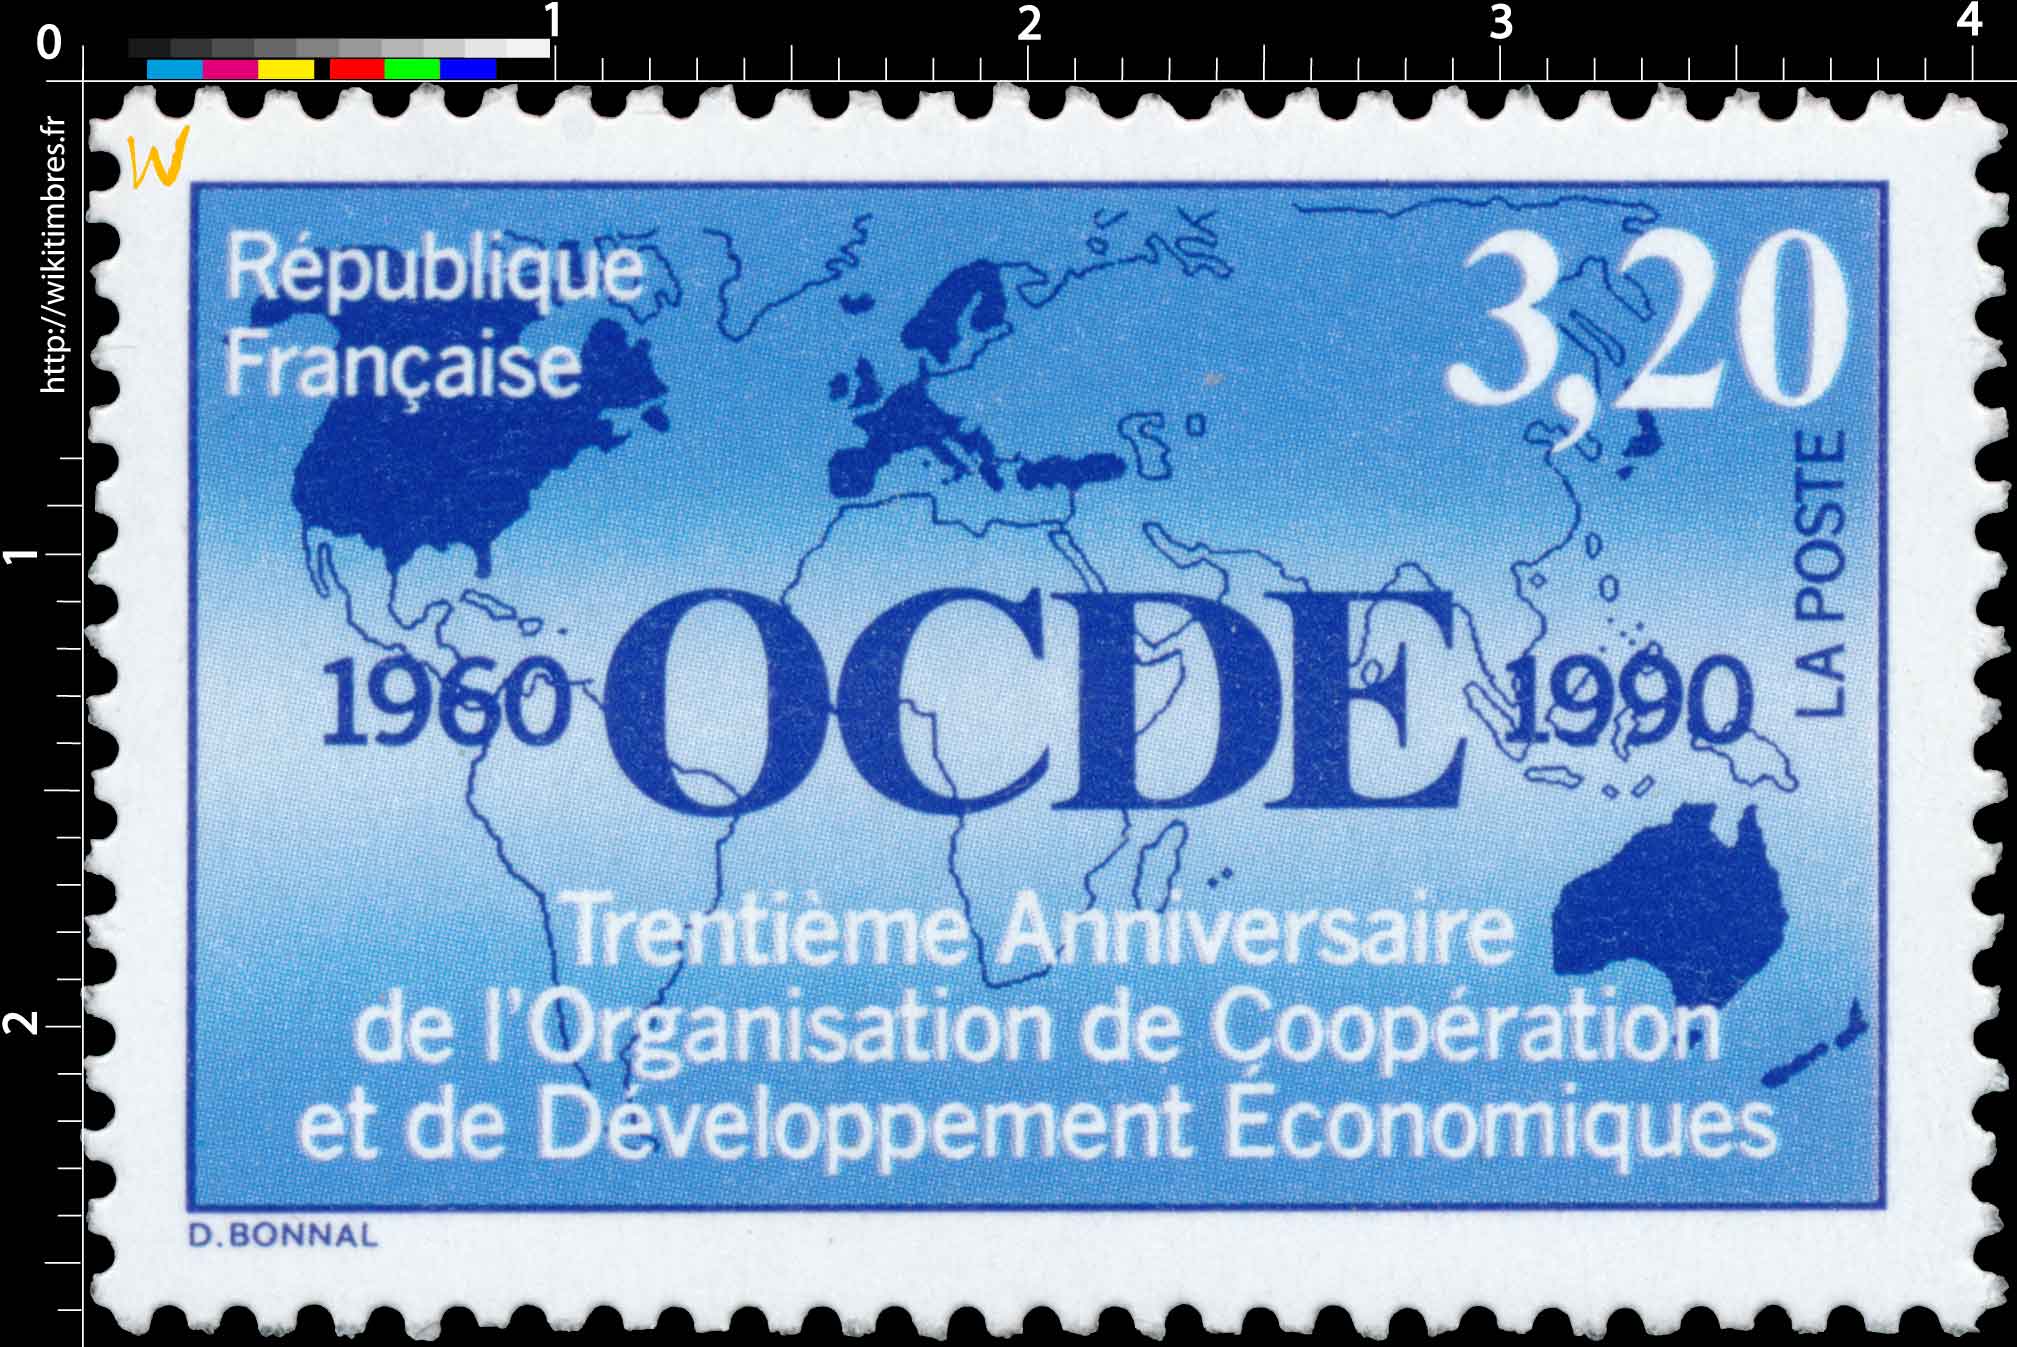 OCDE 1960-1990 Trentième Anniversaire de l'Organisation de Coopération et de Développement Économiques